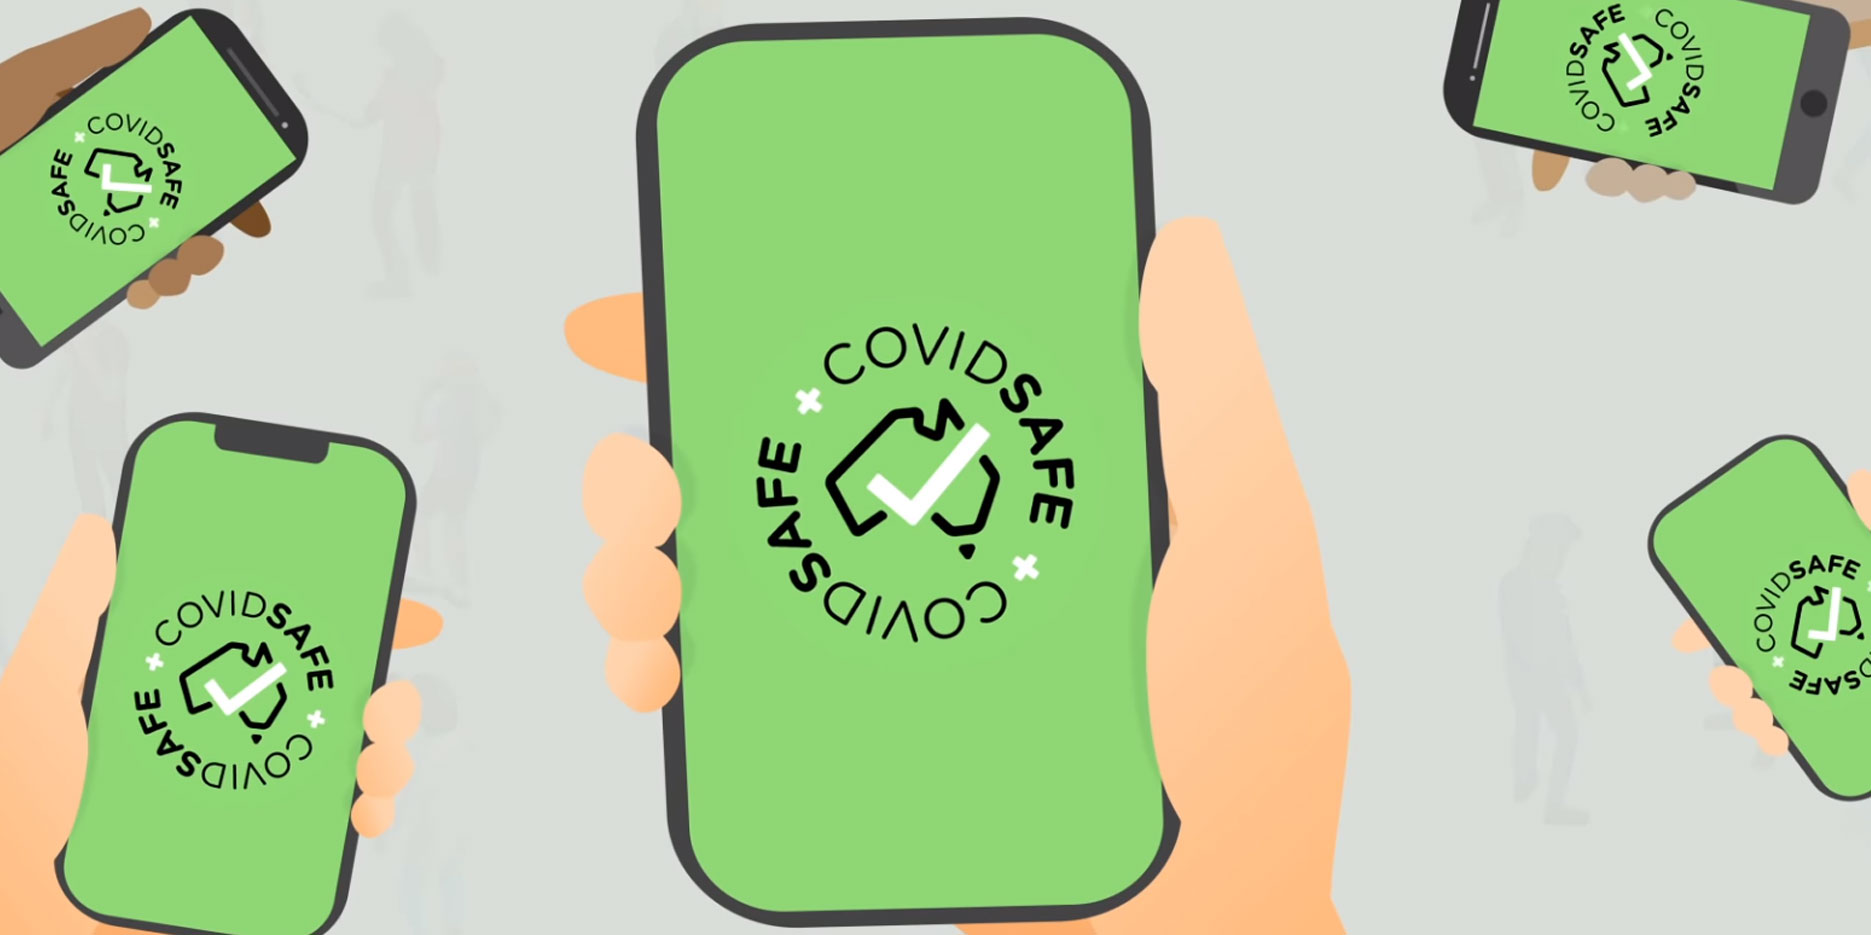 ඩොලර් මිලියන 7 ක මුදලක් වැය වූ ඕස්ට්‍රේලියානු COVIDSafe app මඟින් සොයා ගත් කොරෝනා සබඳතා ගණන​ හෙලි වේ.